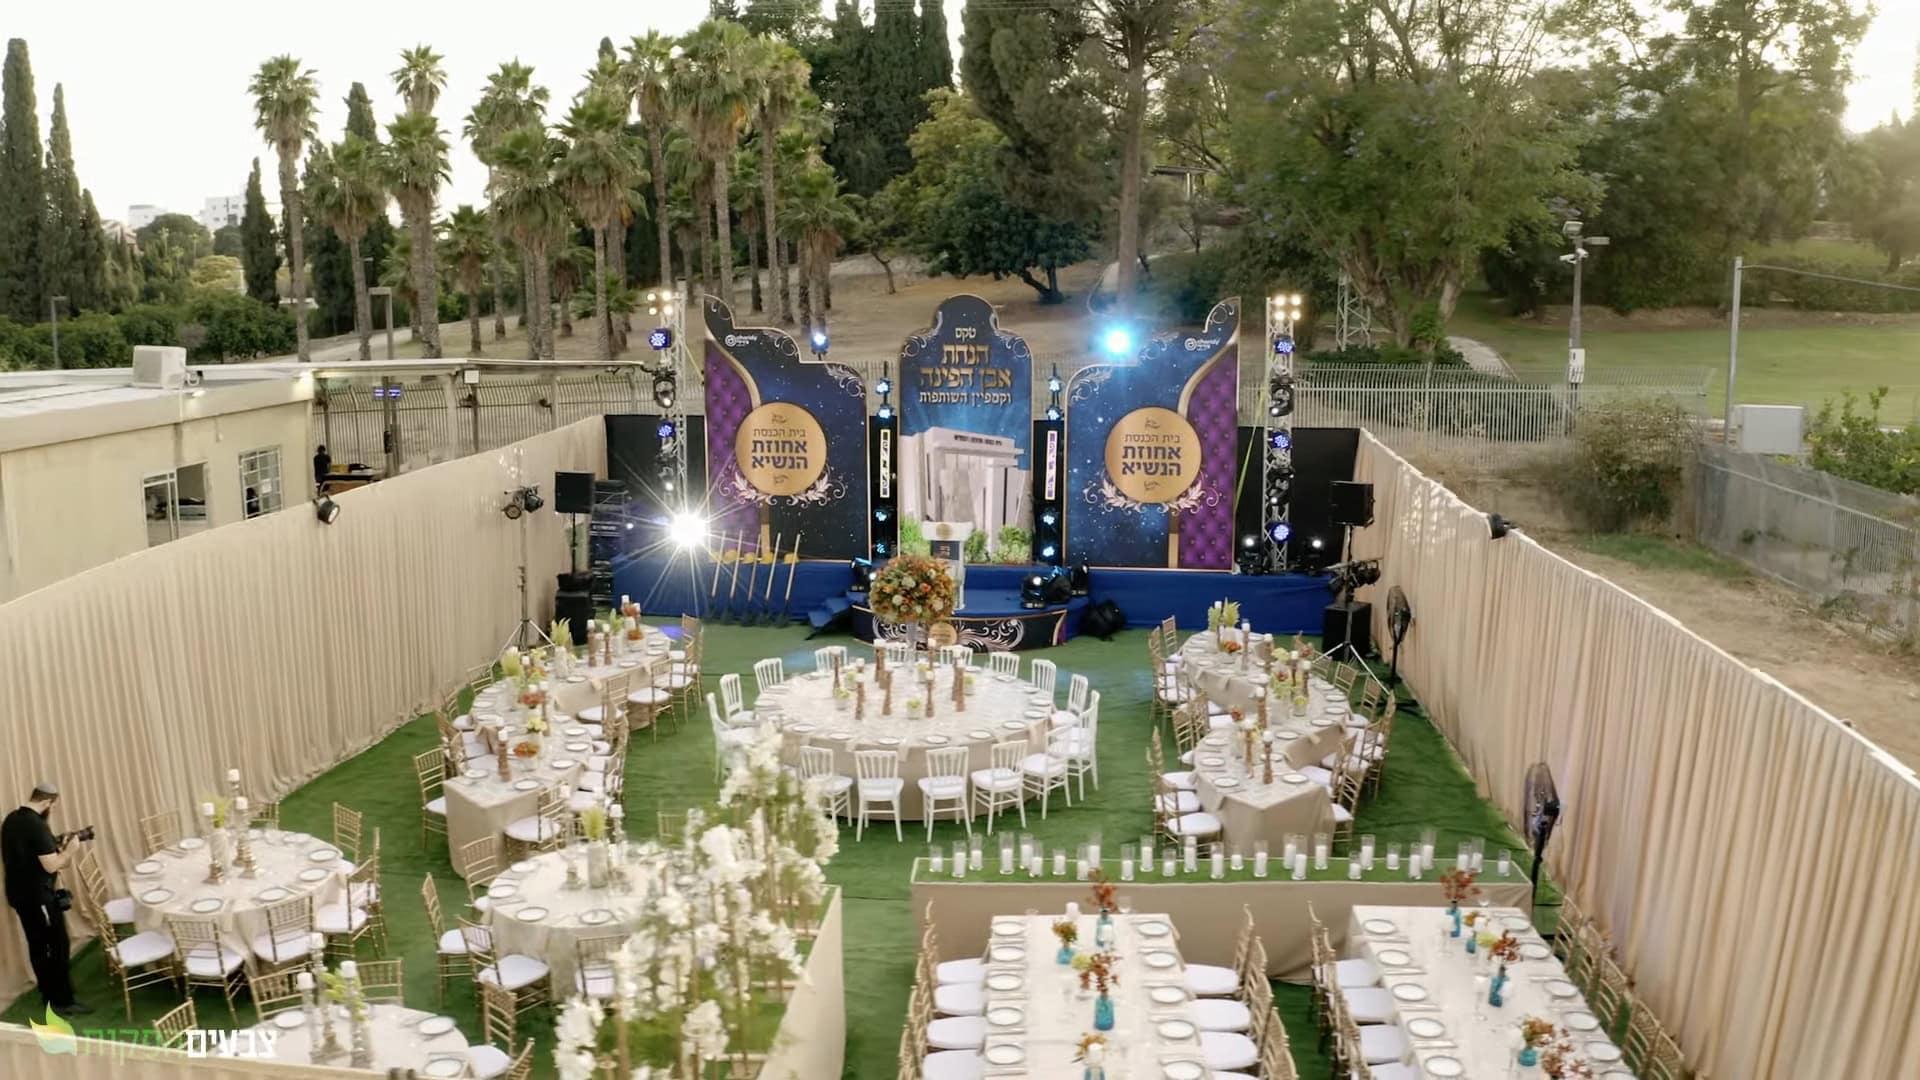 אירוע הנחת אבן הפינה לבית הכנסת "אחוזת הנשיא" ברחובות, 2021 (צילום: צבעים הפקות, יוטיוב, צילום מסך)